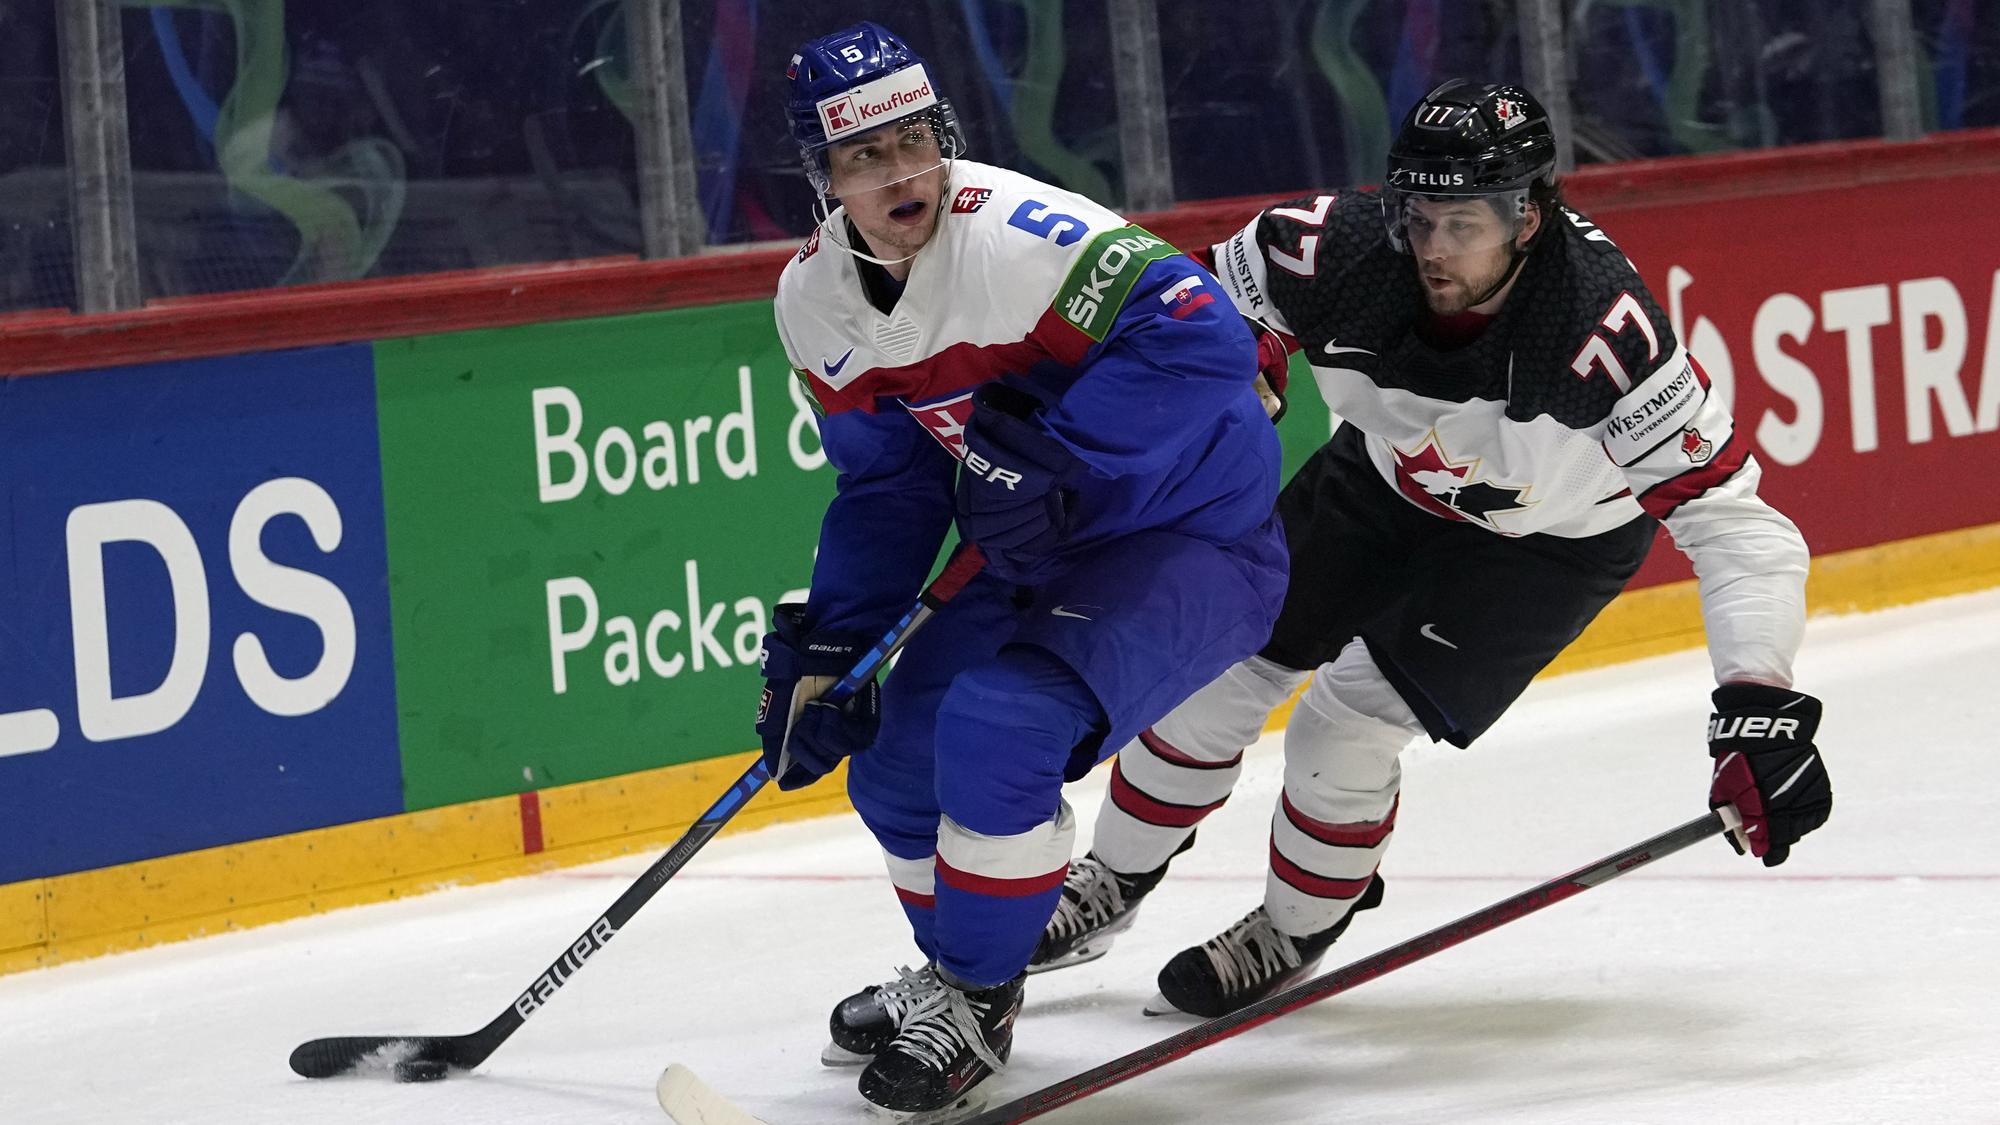 MS v hokeji 2022 - hokej dnes Slovensko - Kanada 1:5 / highlighty | Šport.sk